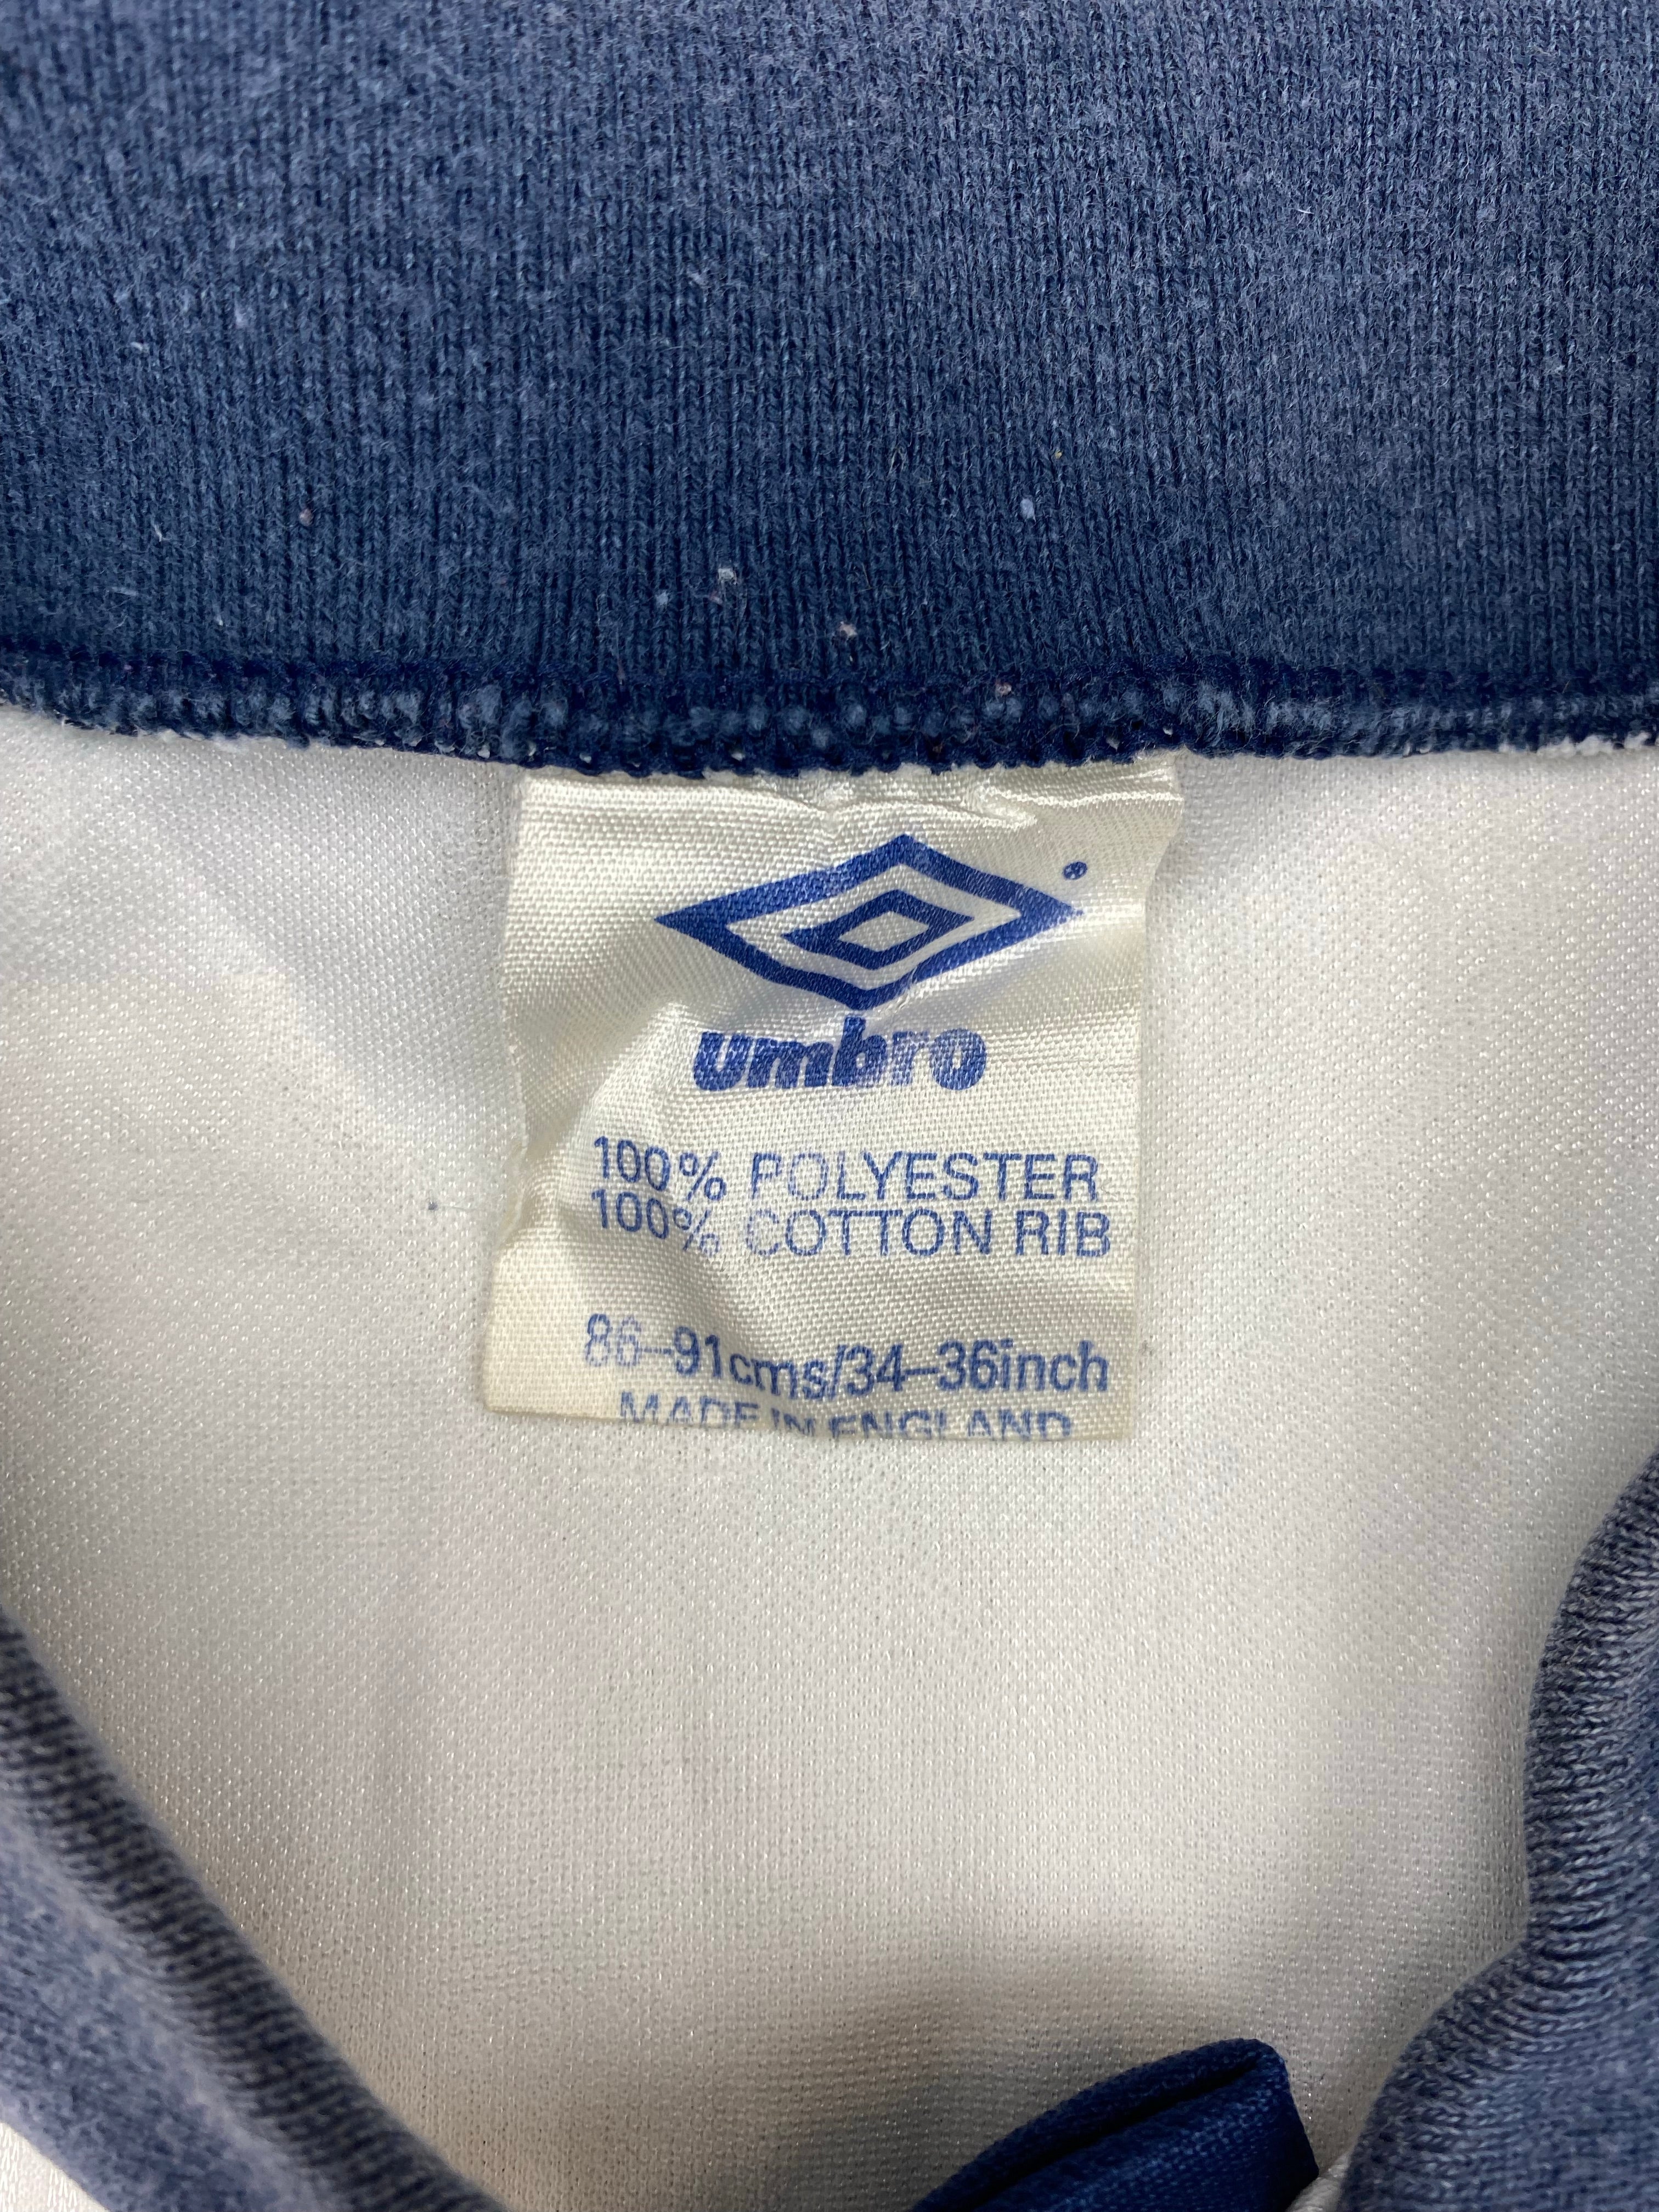 1989/90 Aberdeen Away Shirt (S) 8/10